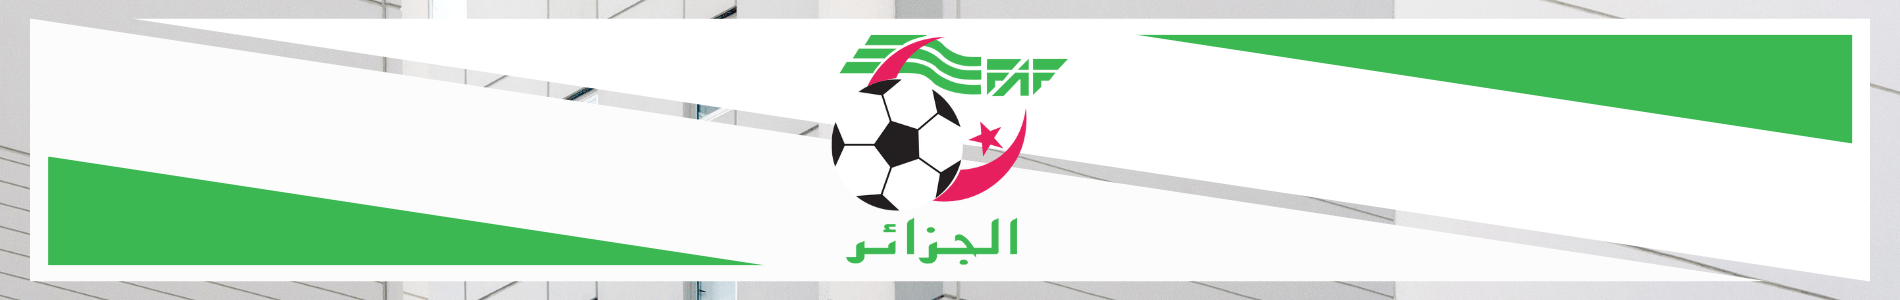 maillot de foot algerie